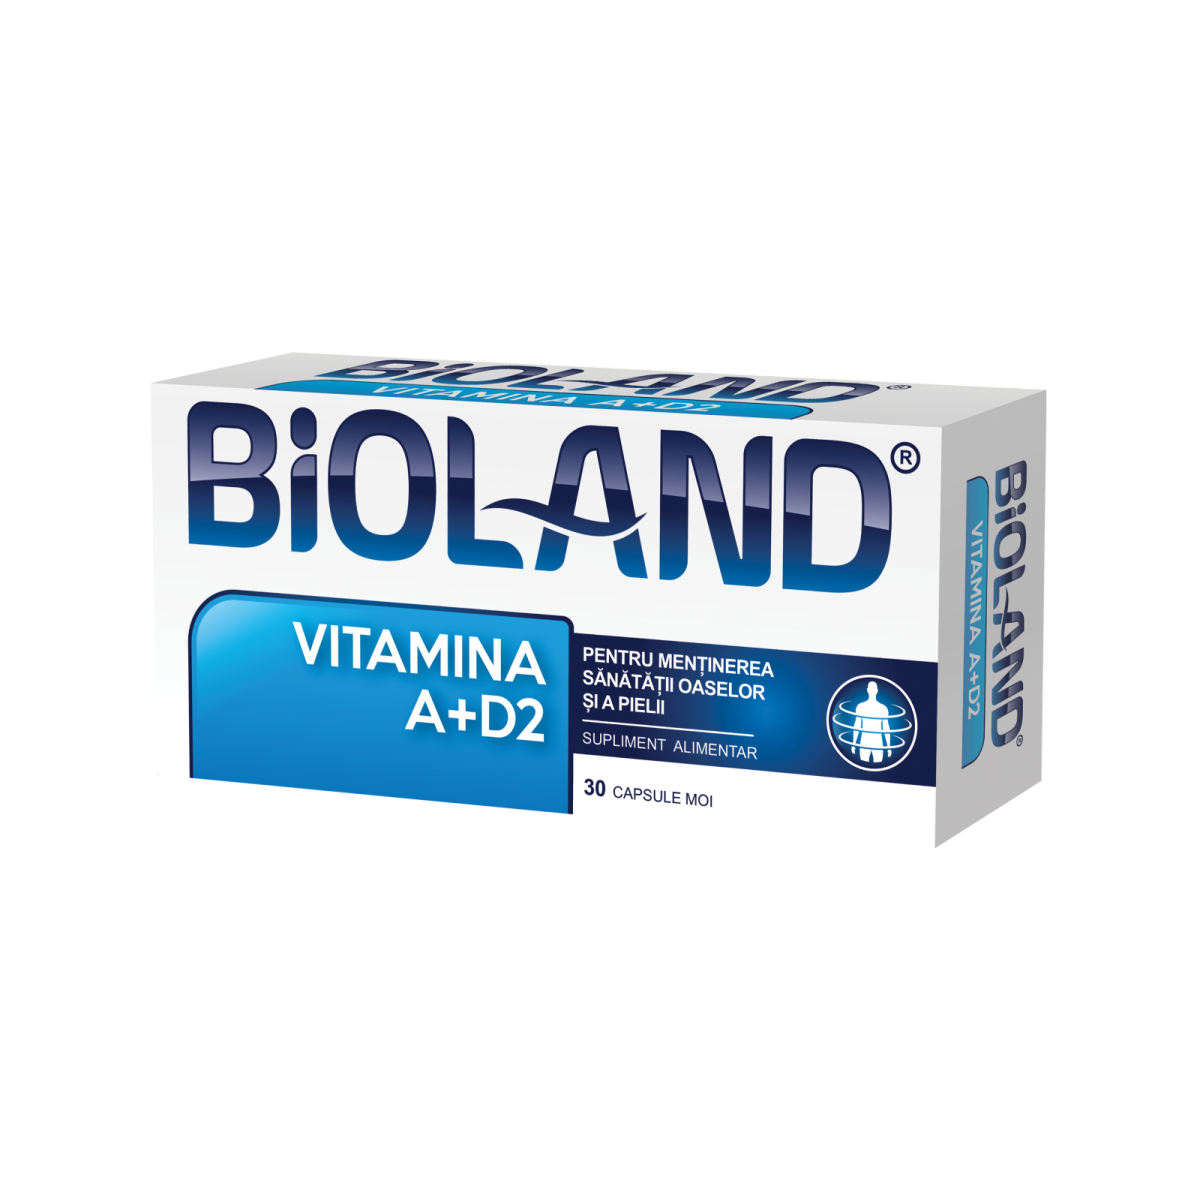 Uz general - Vitamina A+D2, 30 capsule, Biofarm, sinapis.ro